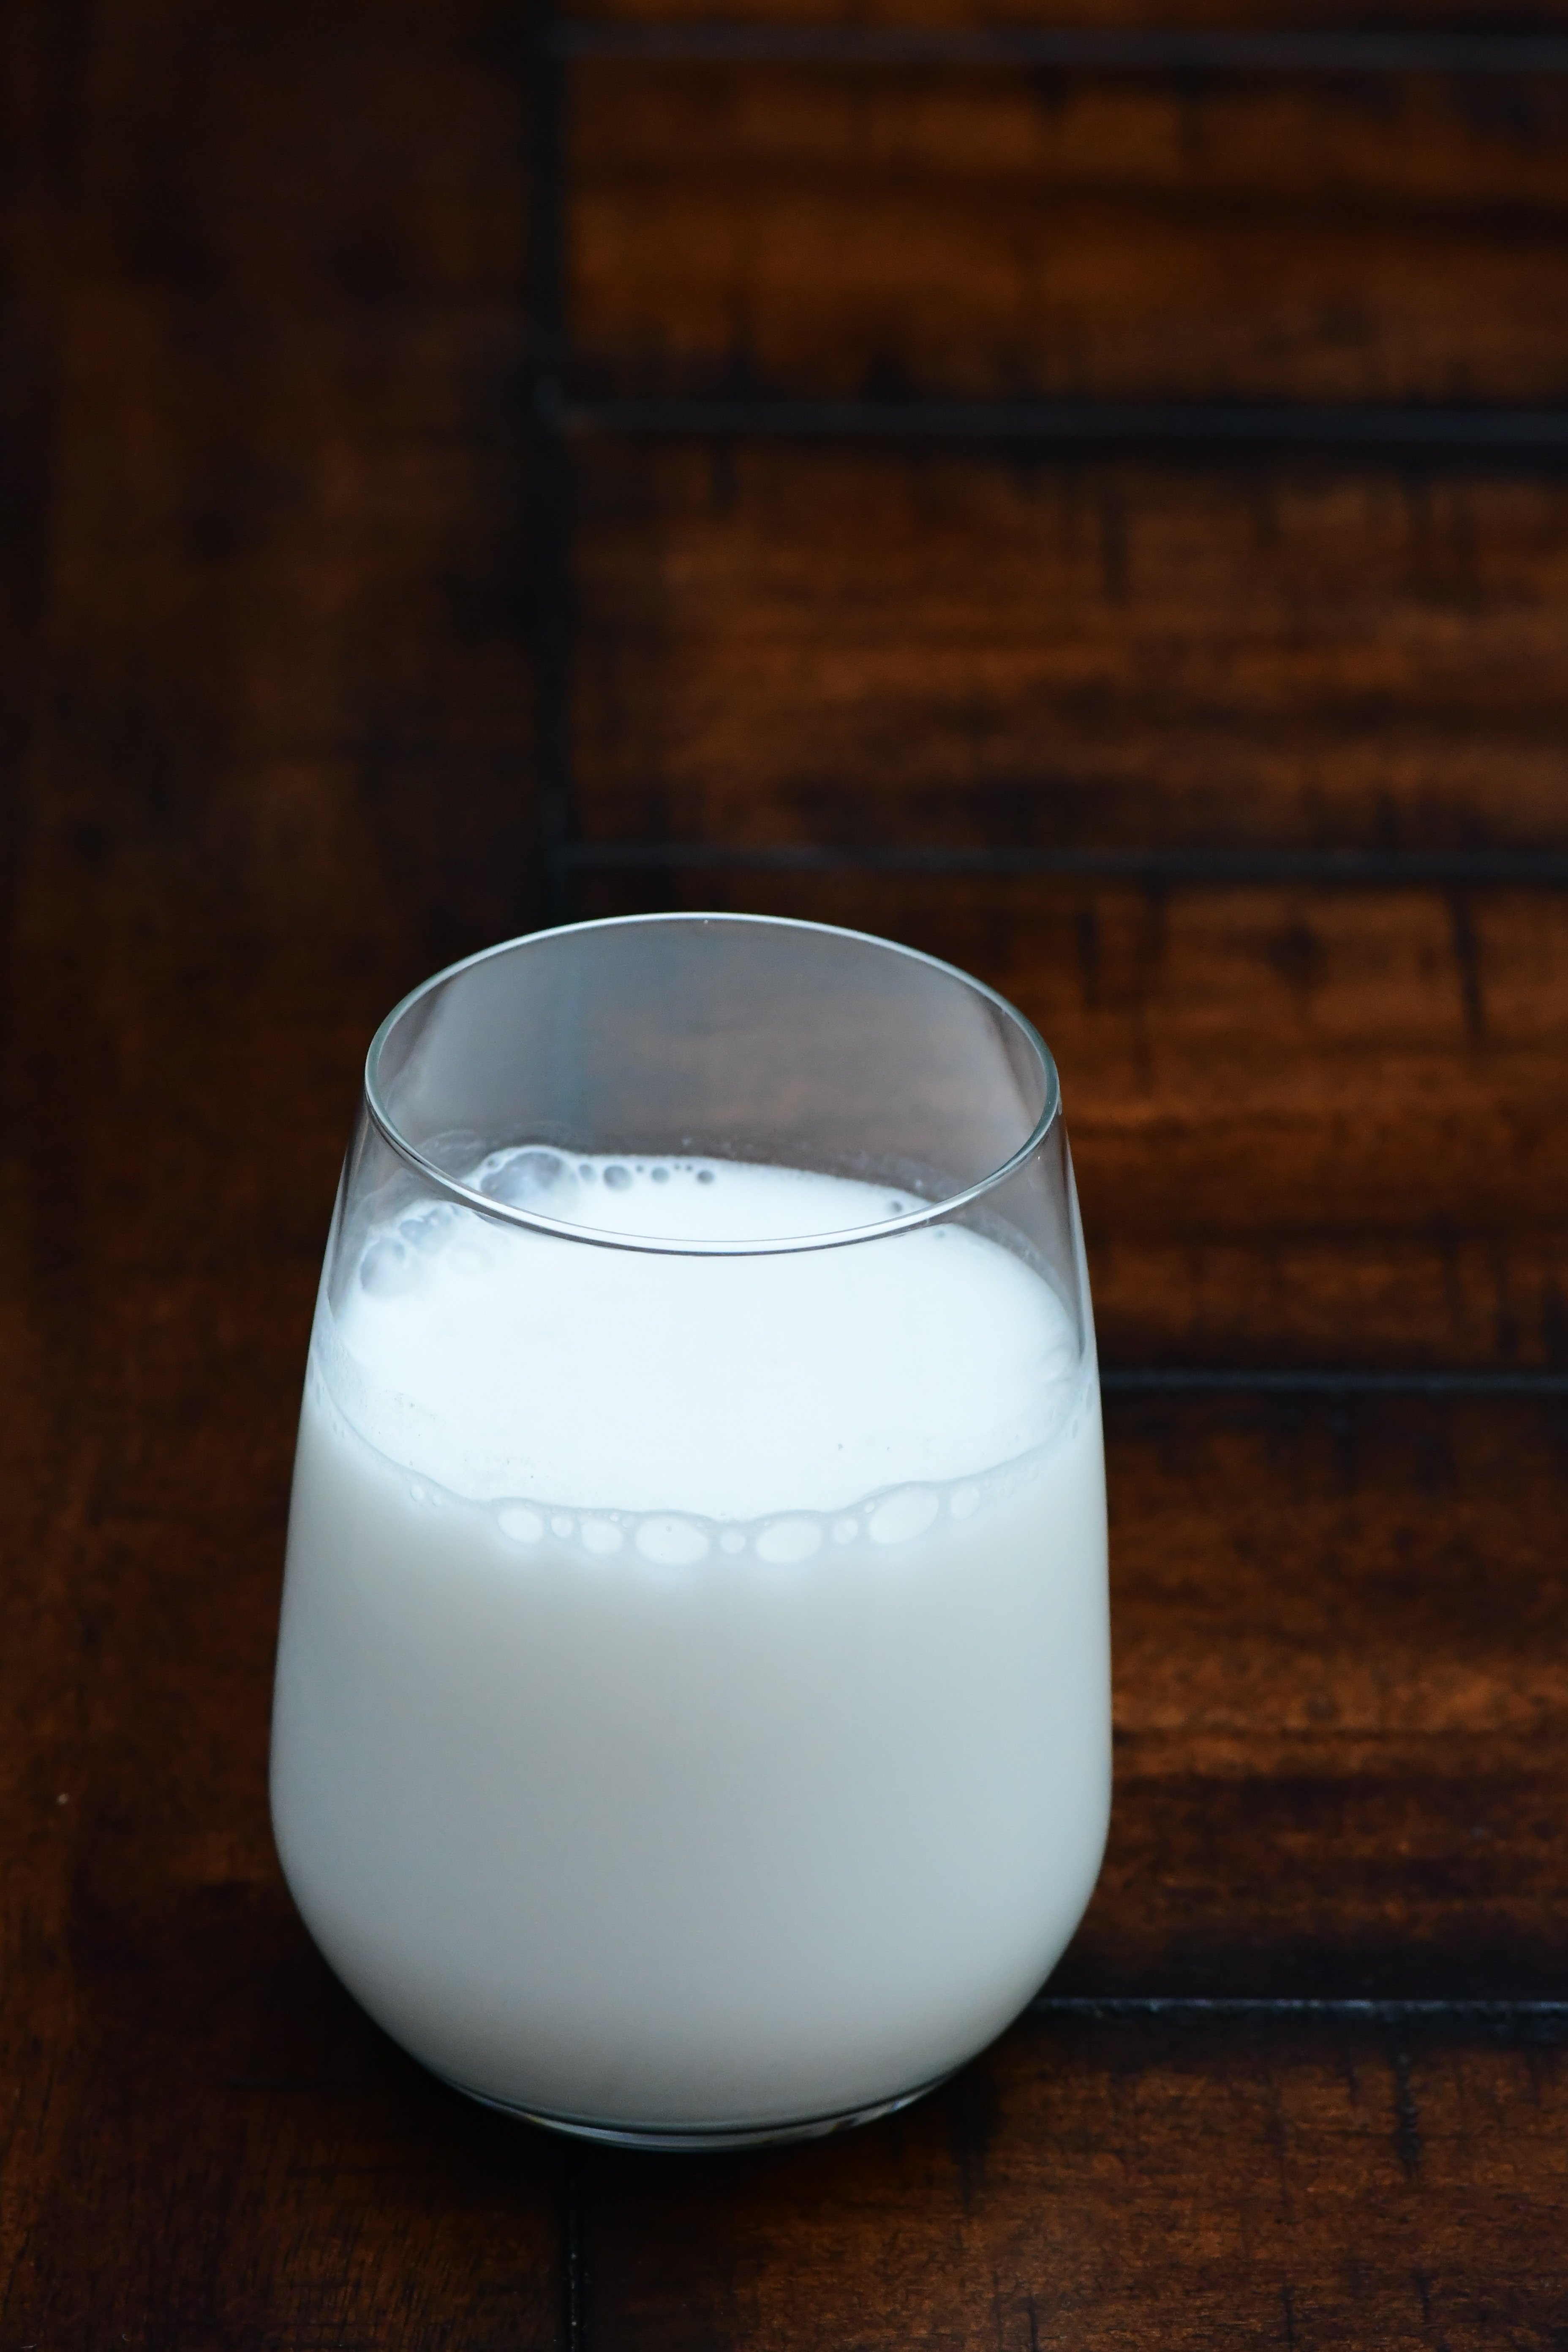 A glass of milk | Source: Unsplash.com